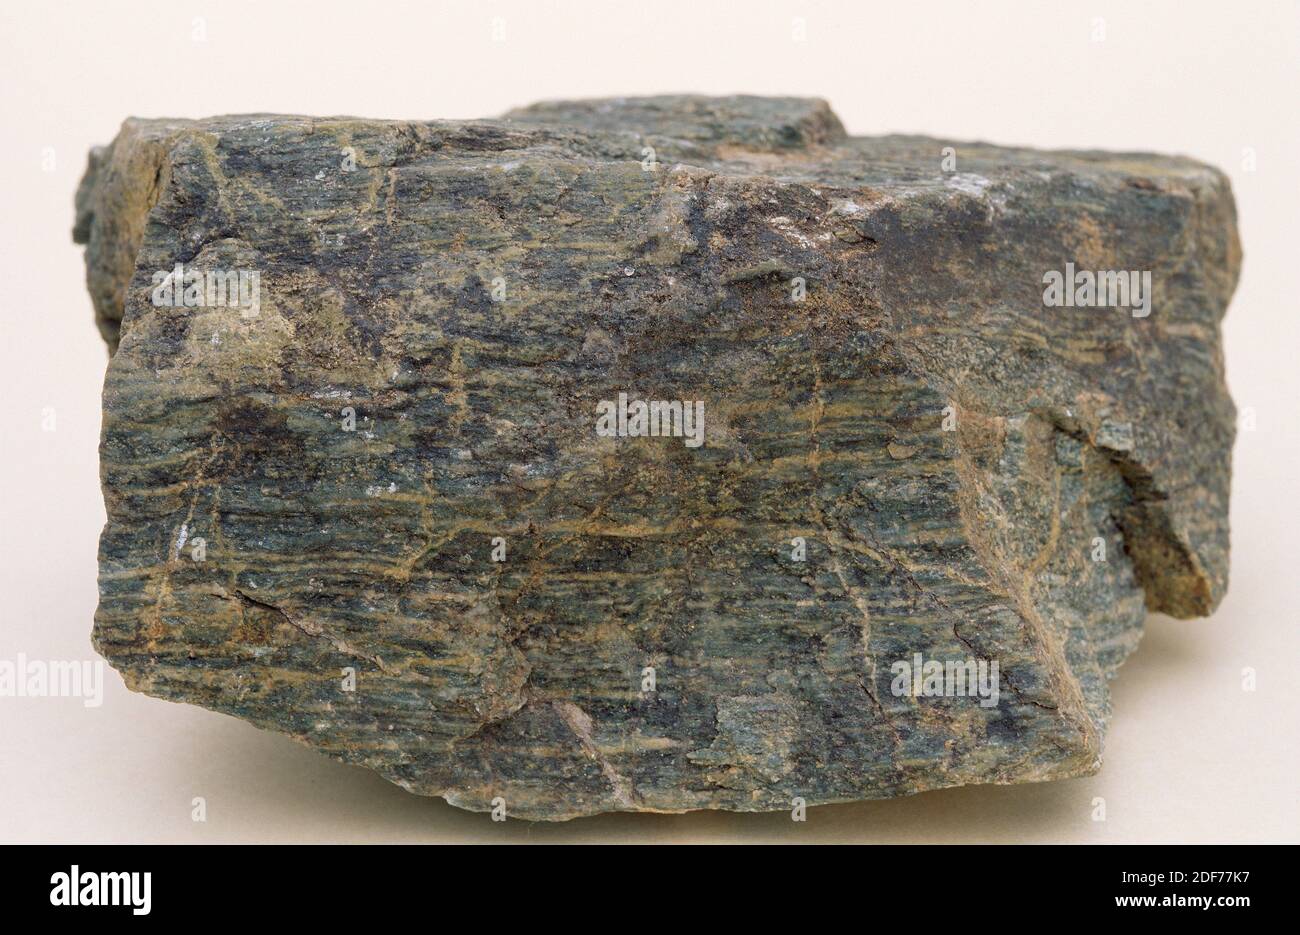 Amphibolit ist ein metamorphisches Gestein, das hauptsächlich aus Amphibolmineralen besteht. Probe. Stockfoto